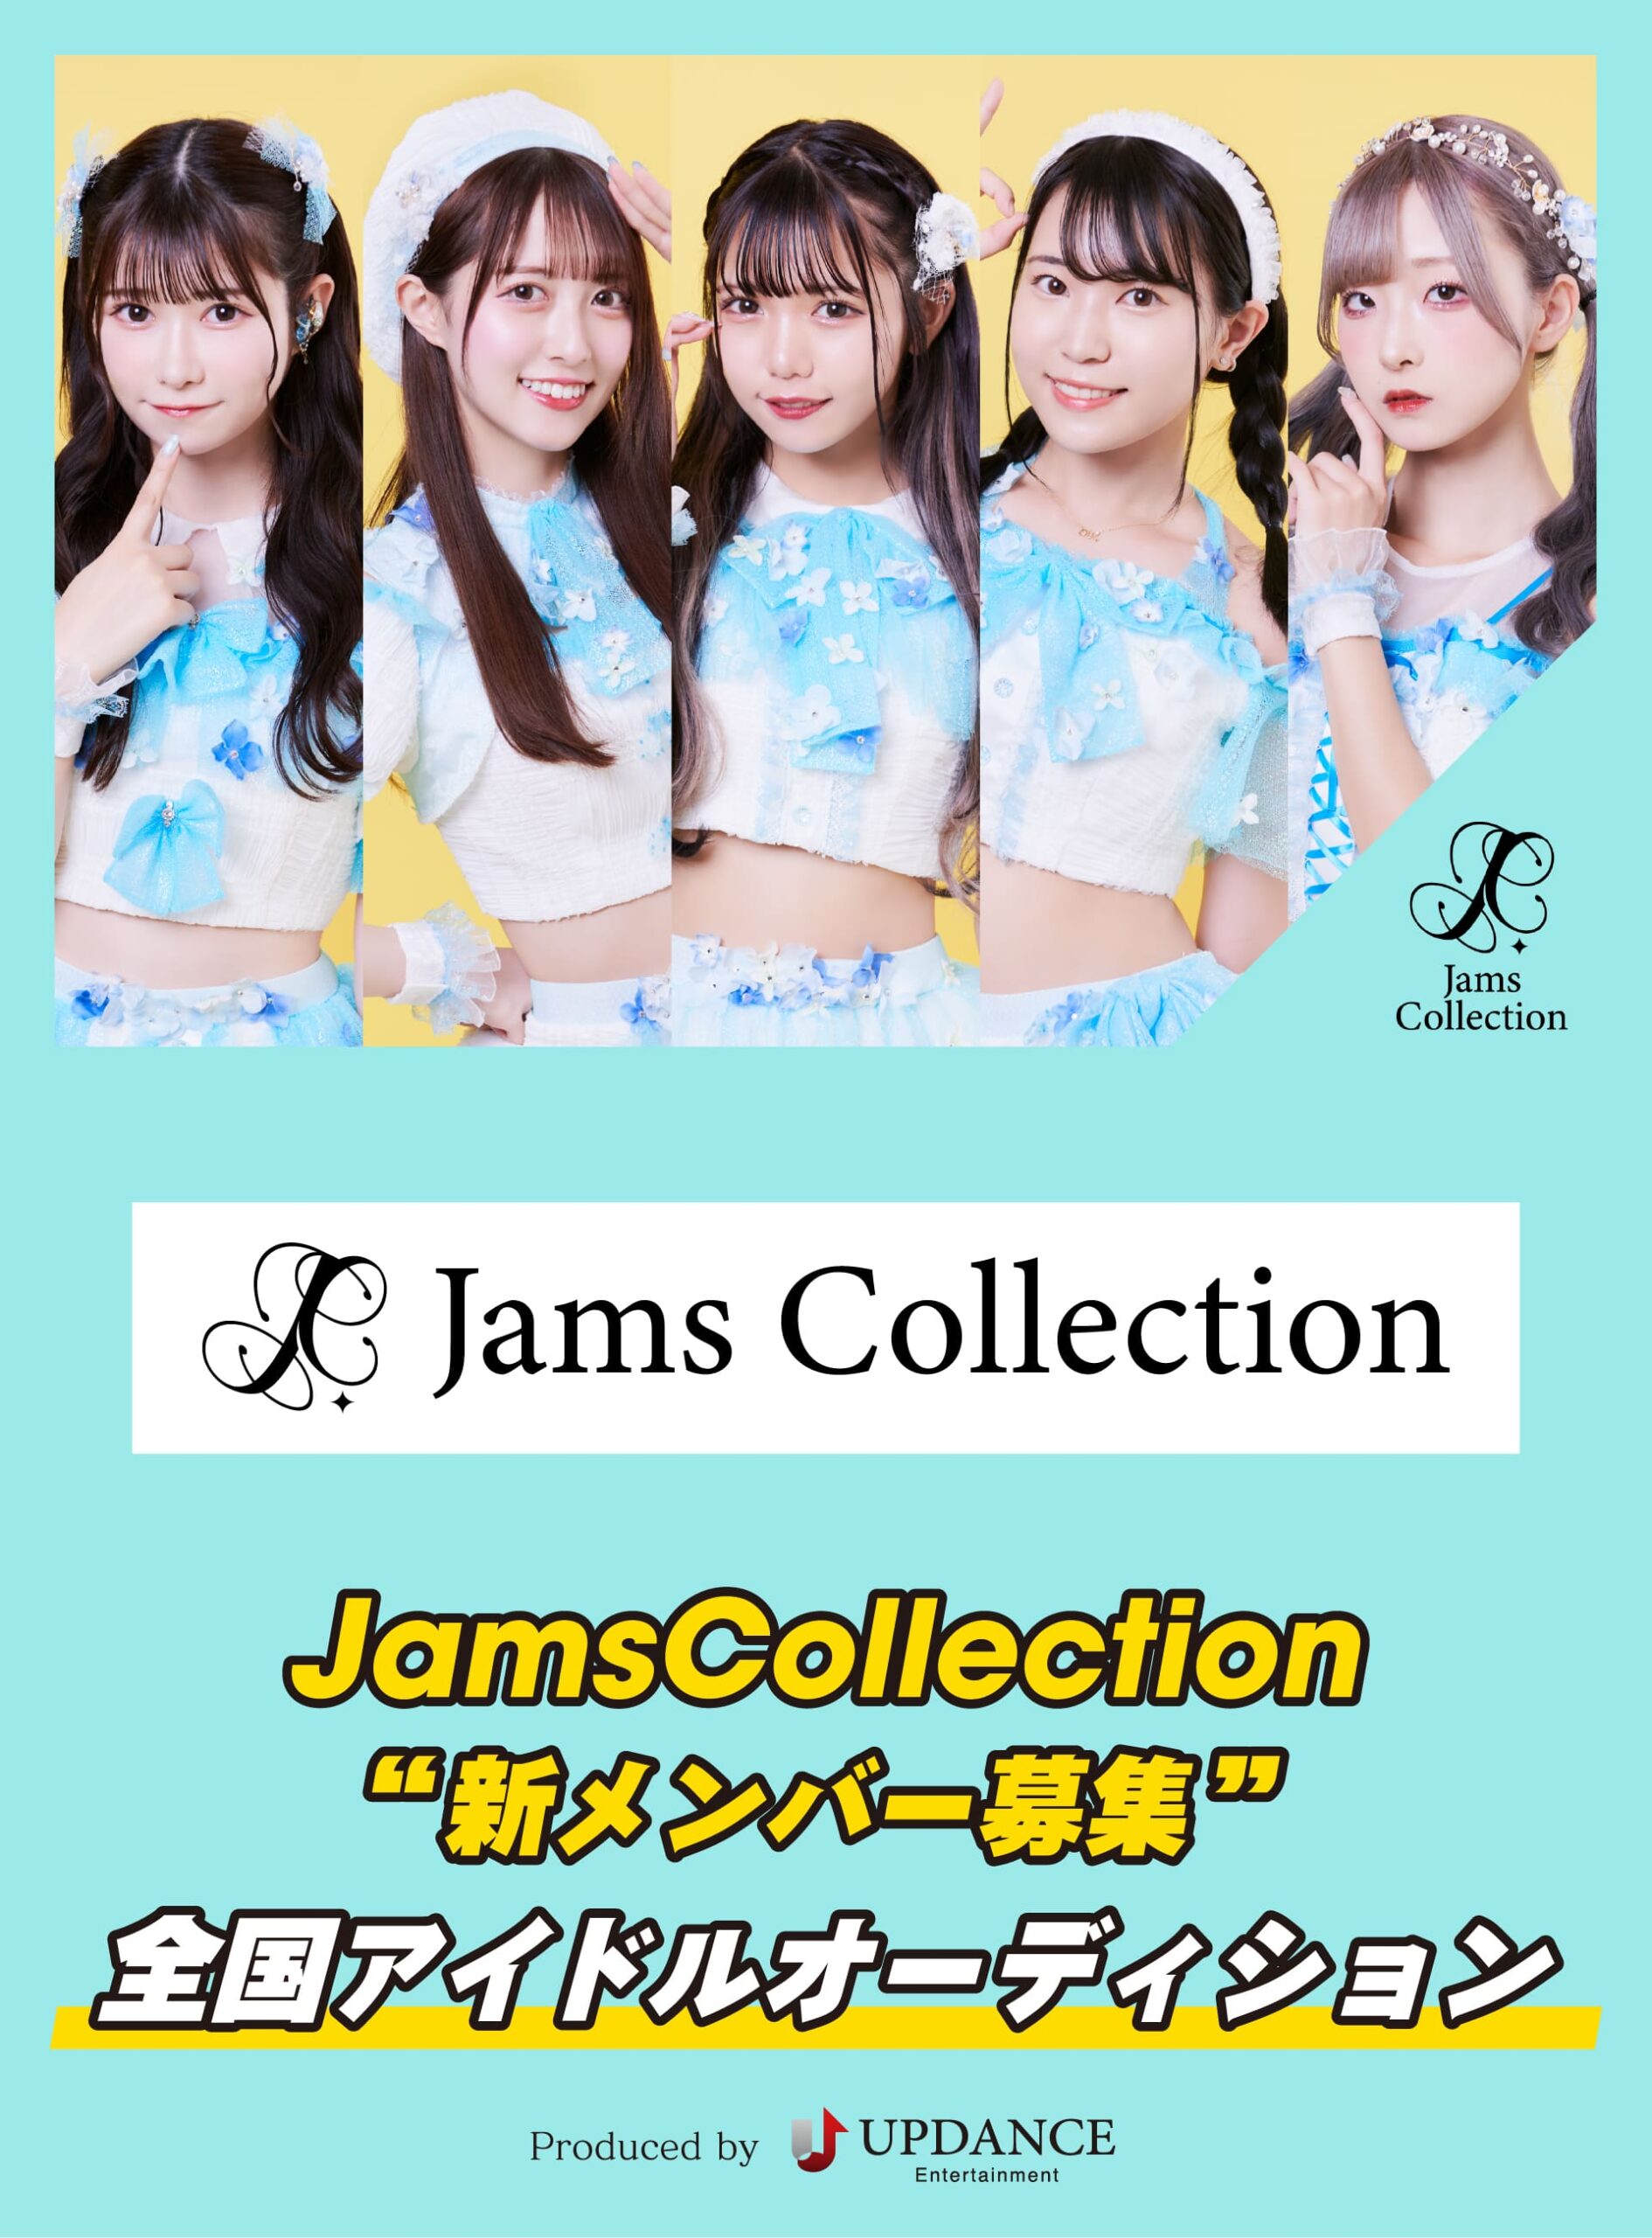 Jams Collection初の“新メンバーオーディション”開催!! 凄まじい勢いで成長を遂げるジャムズに新たな個性を!! 【メンバーコメントあり】：Jams Collection